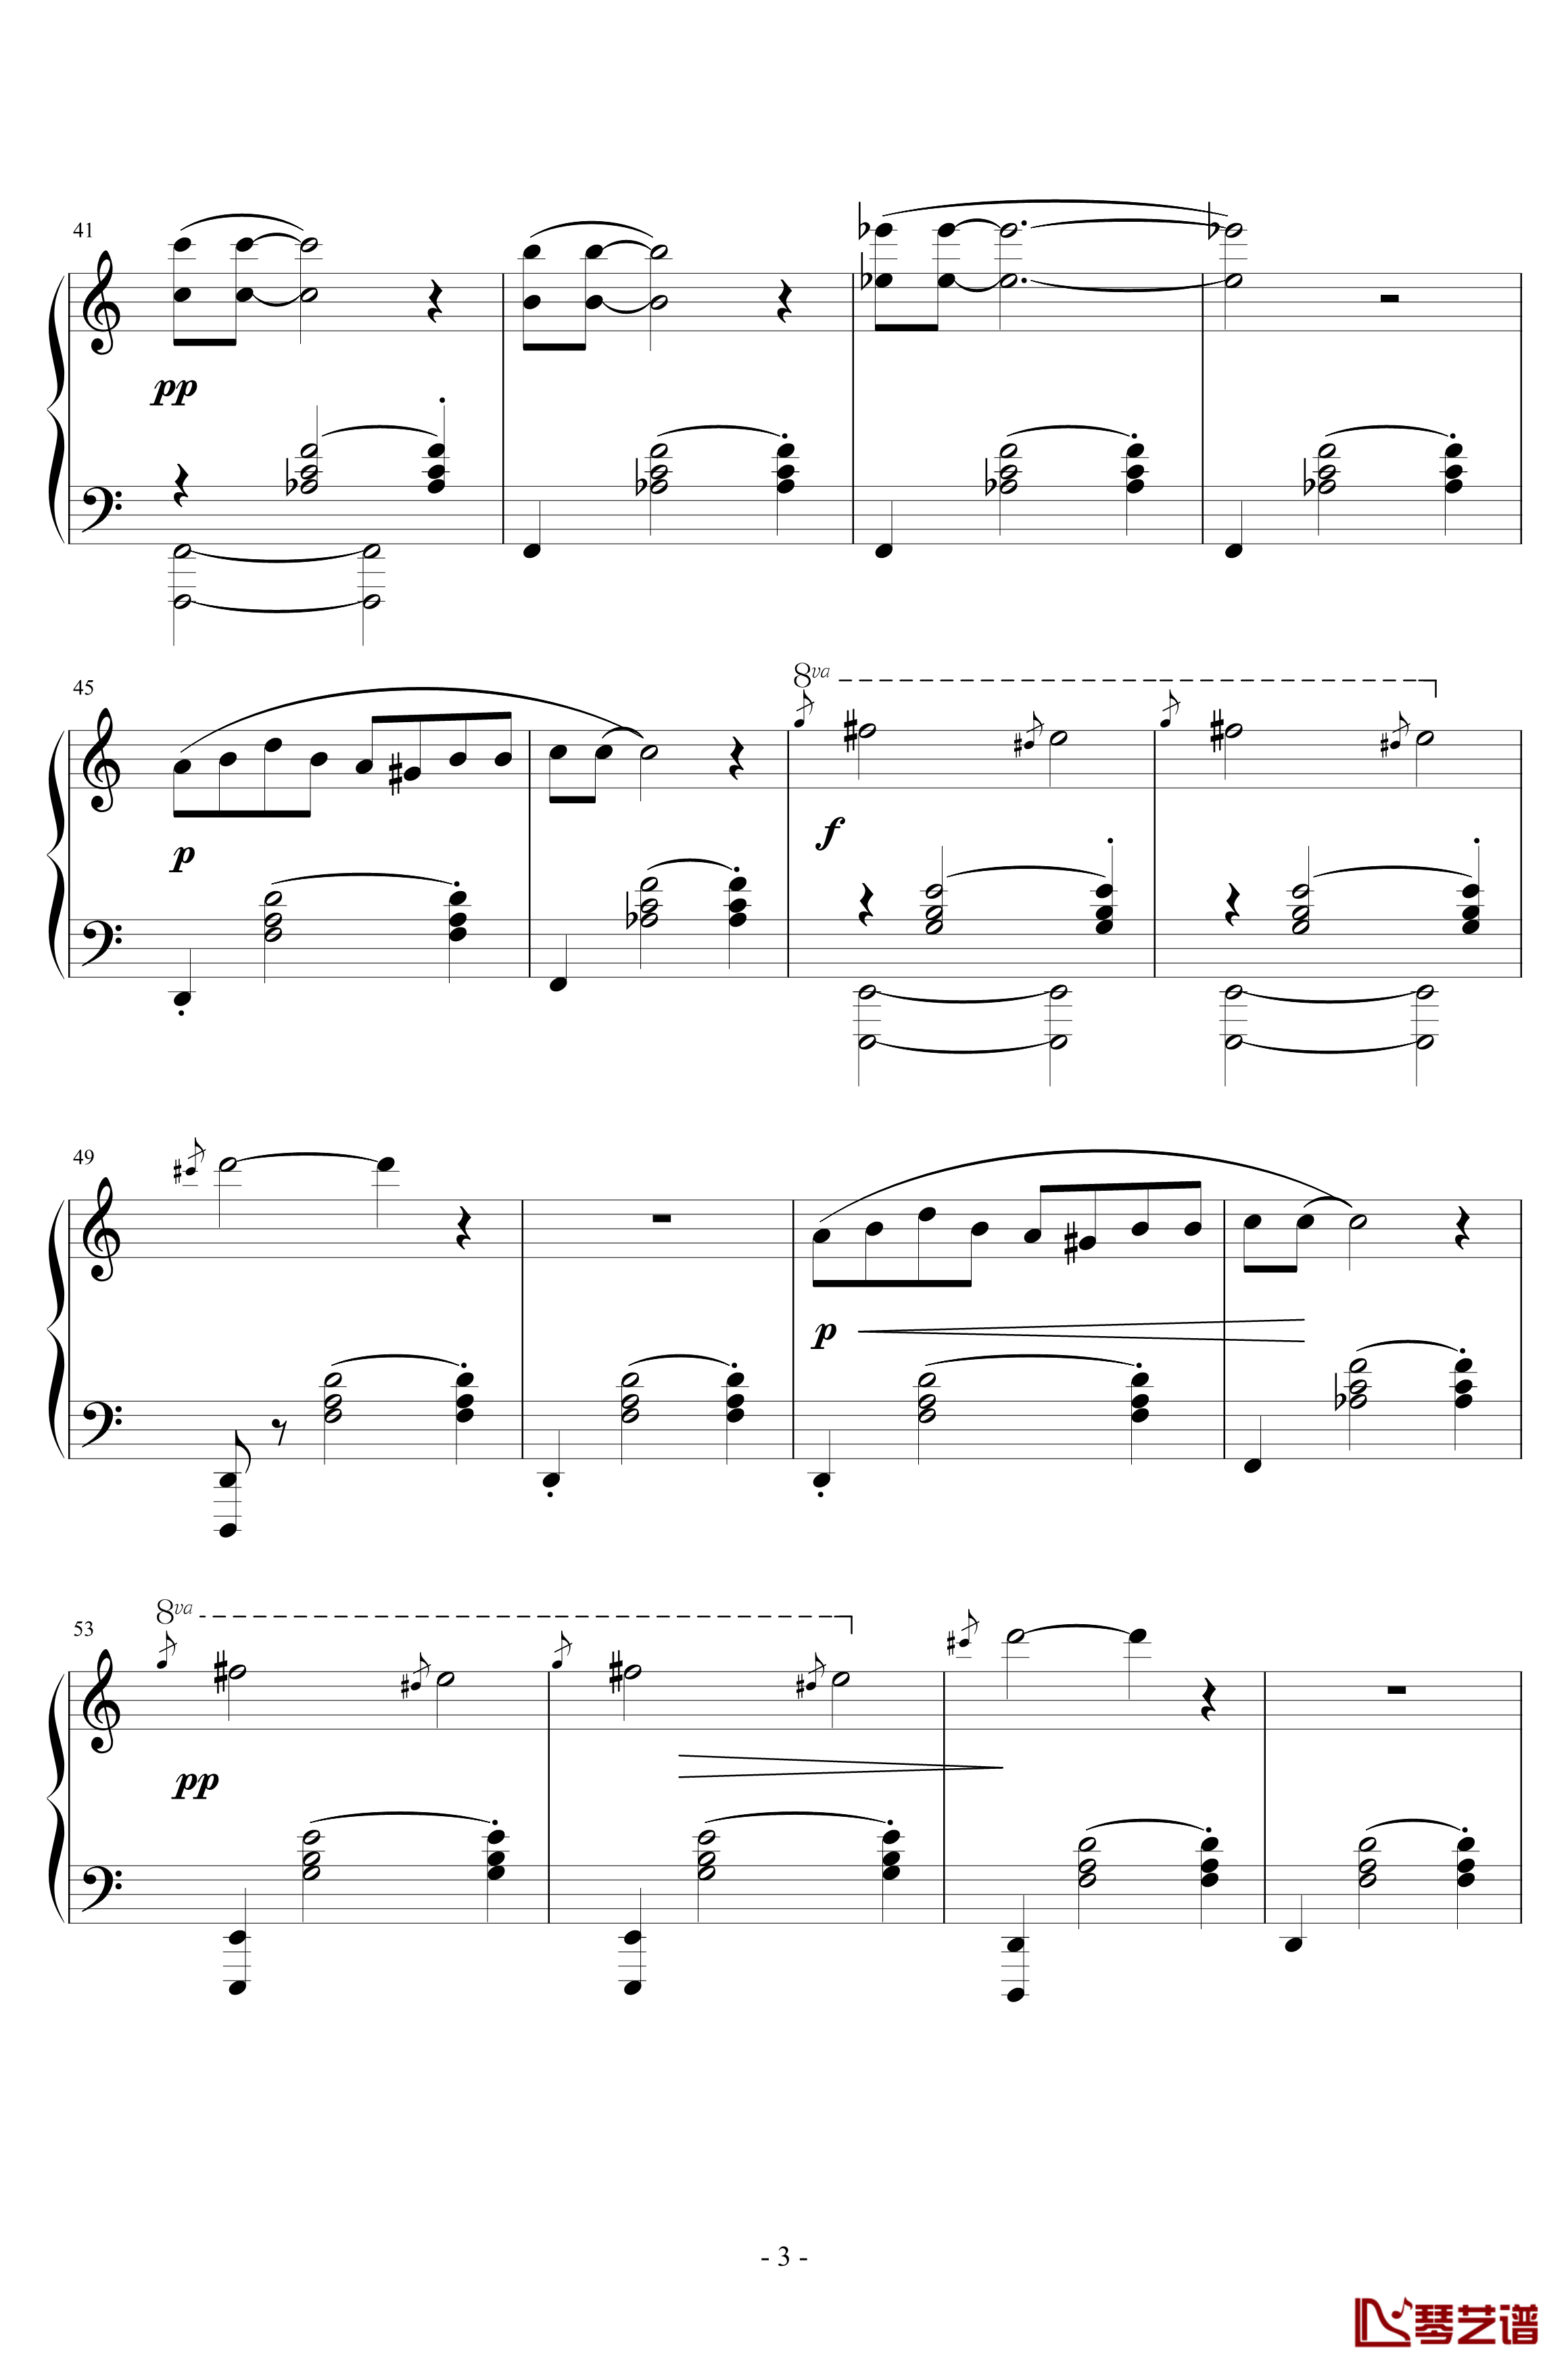 三首梨形小品钢琴谱-序奏-说话在先-沙拉萨蒂-萨蒂3